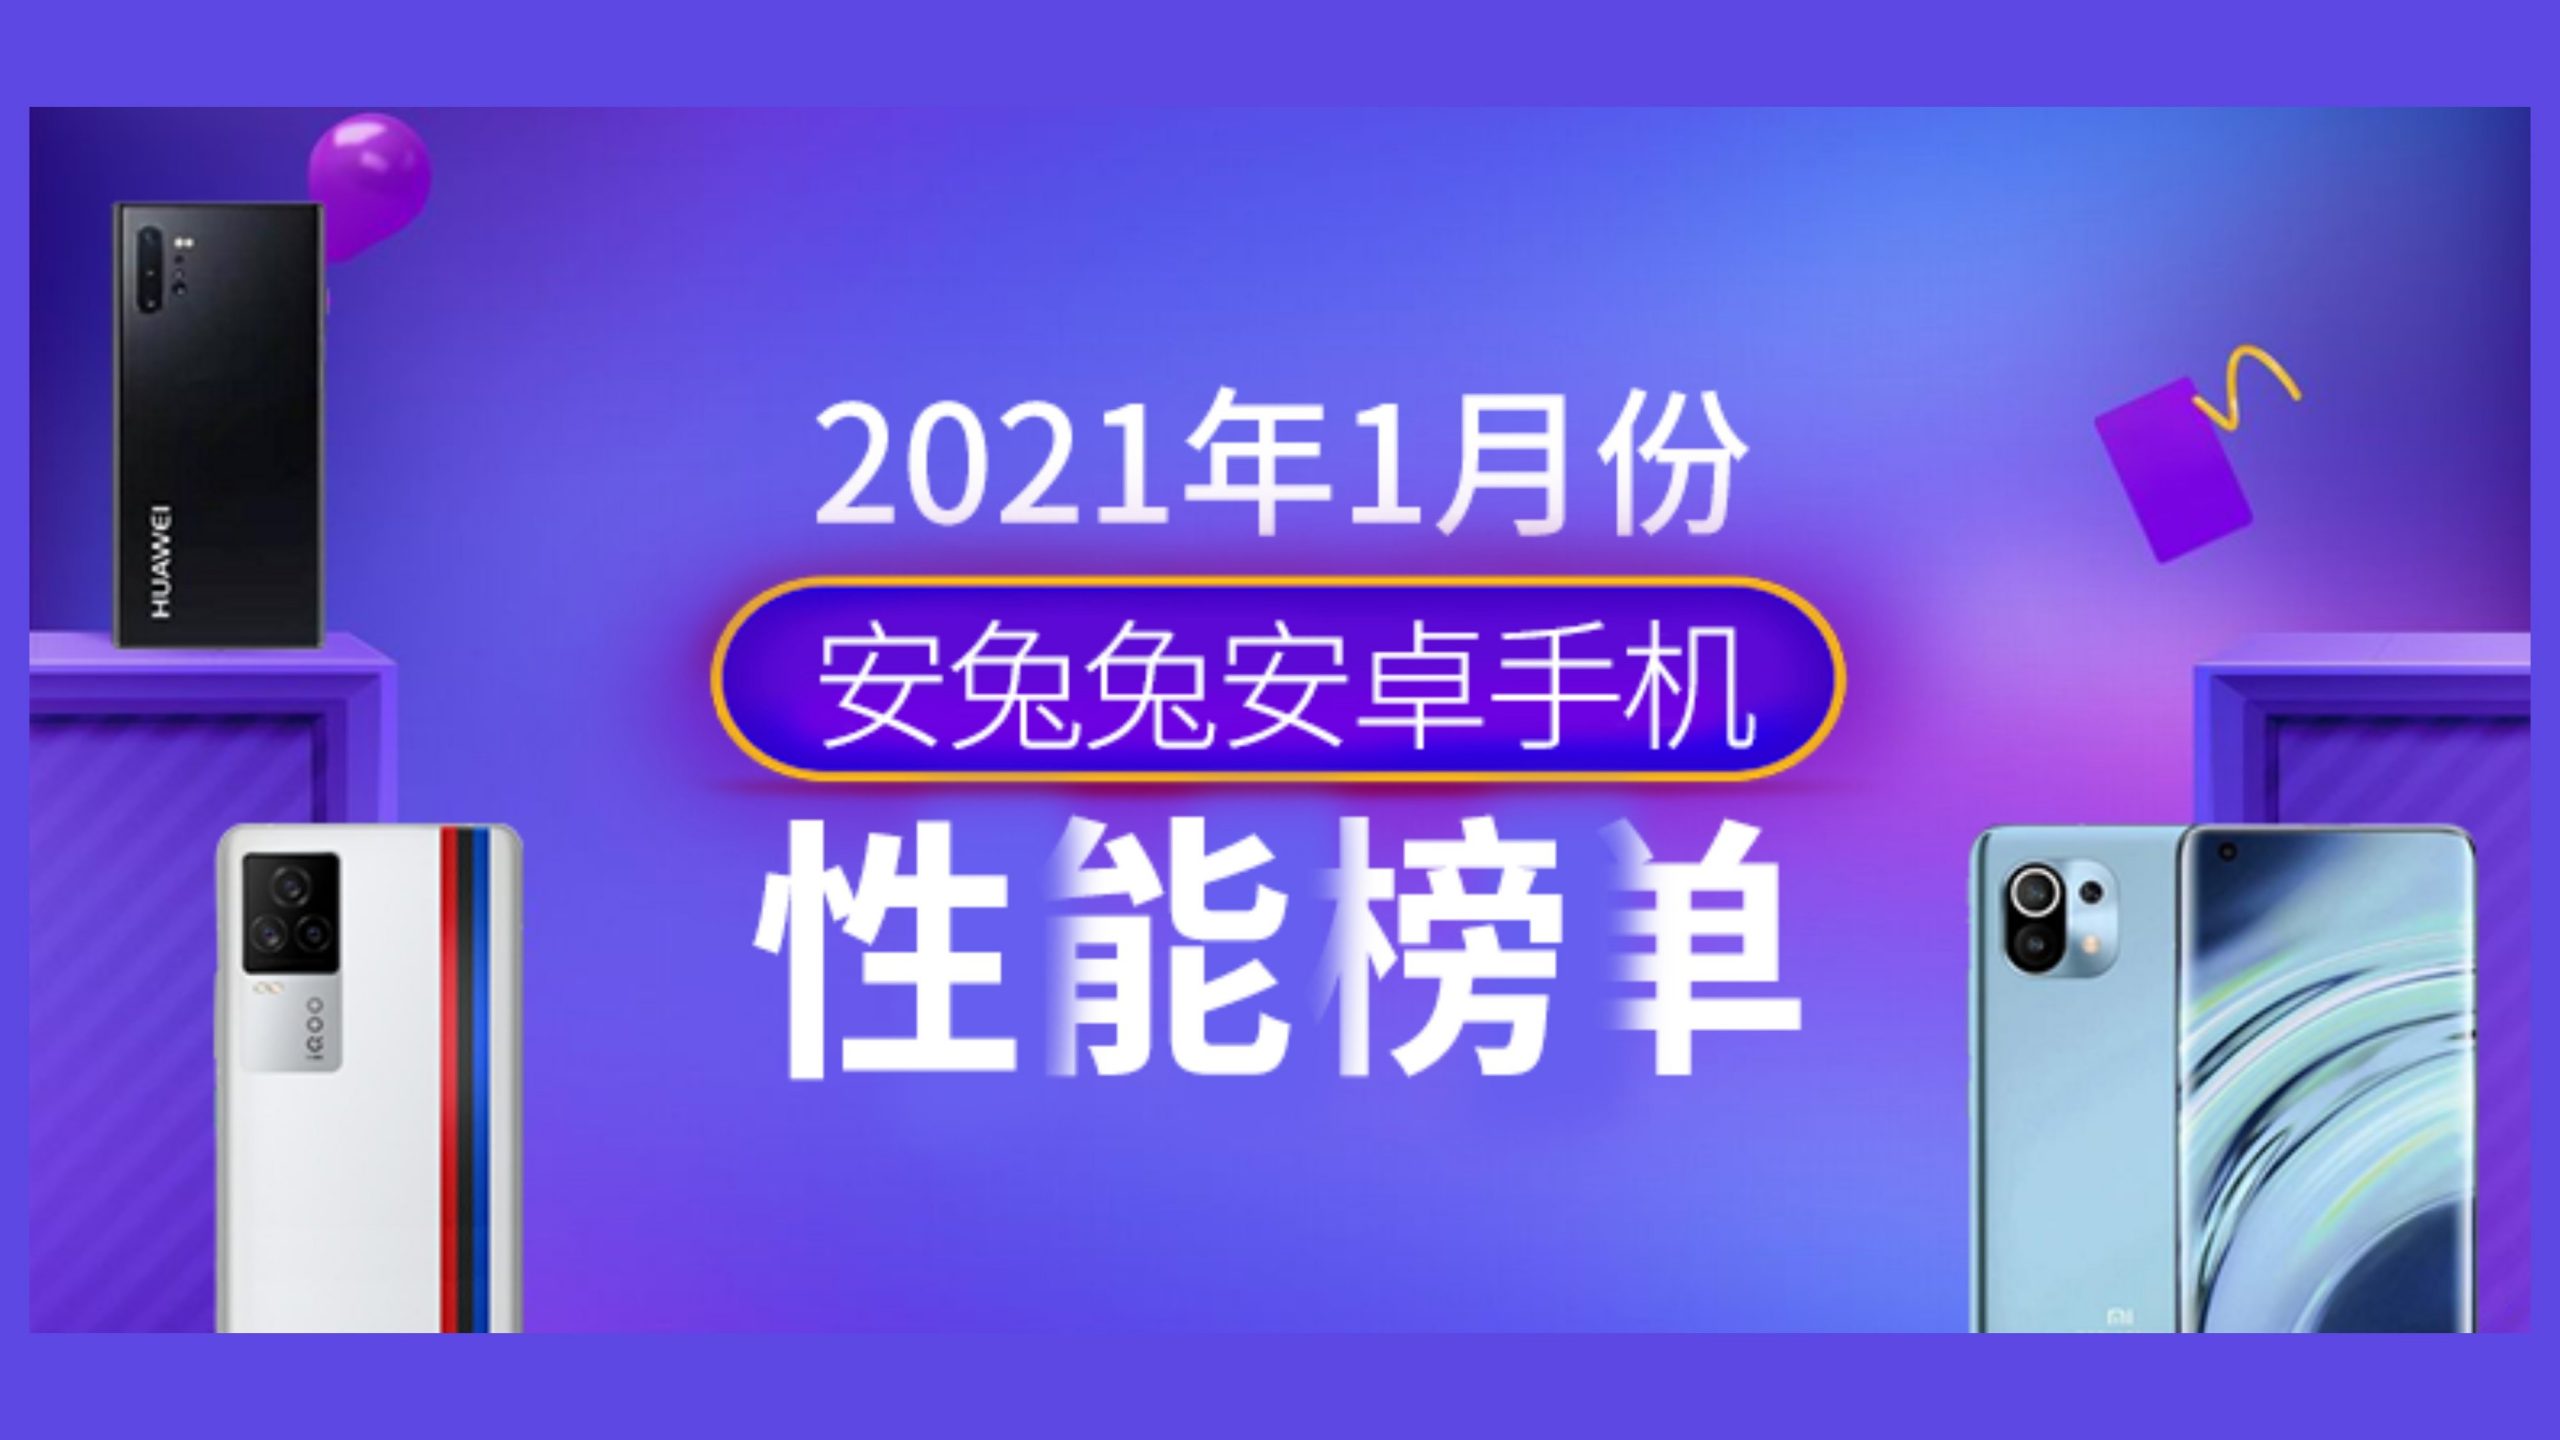 AnTuTu January 2021: Xiaomi Mi 11 loses its crown to iQOO 7